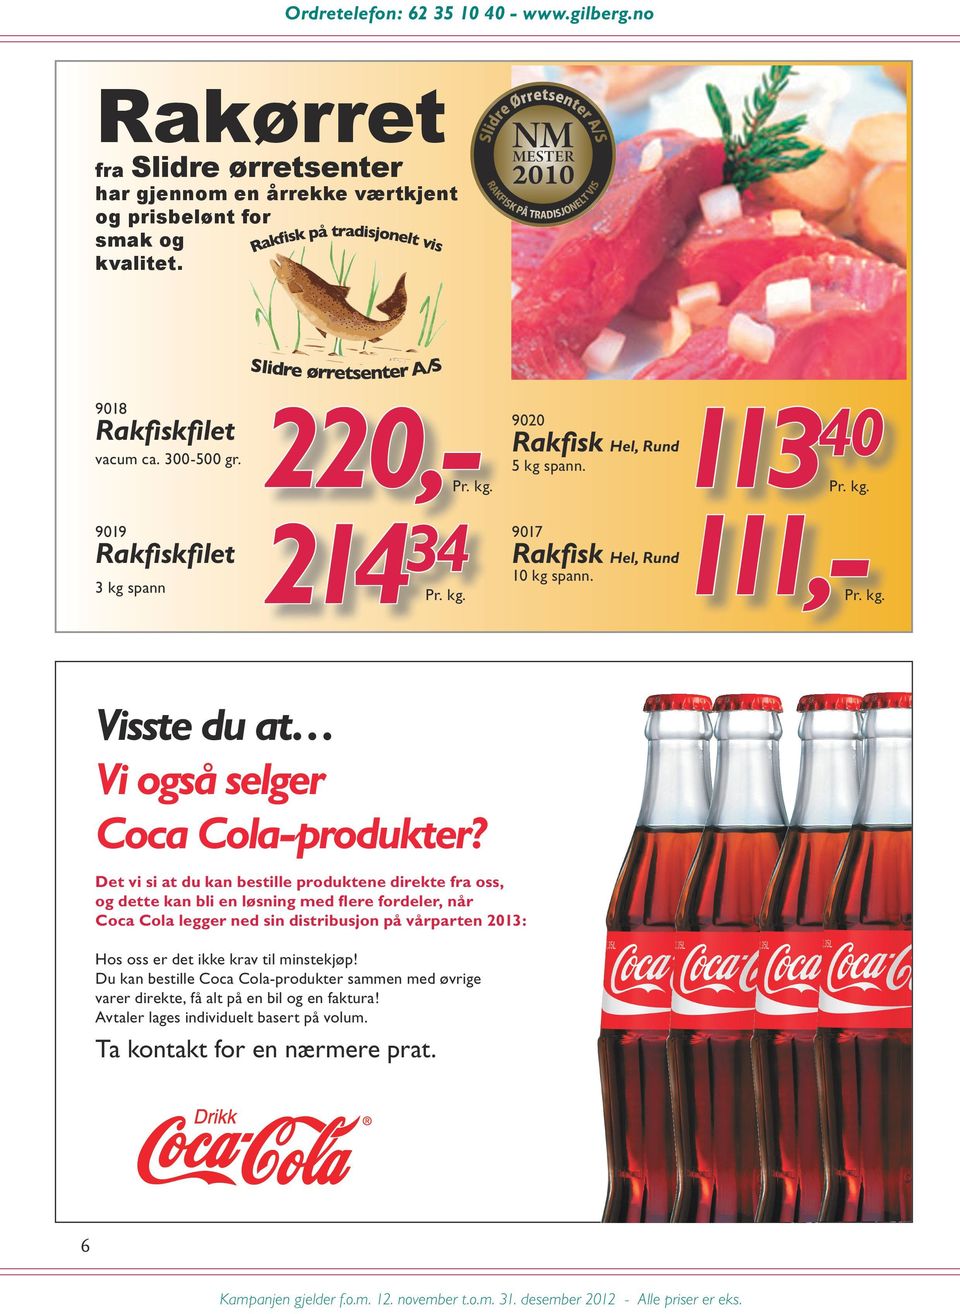 Det vi si at du kan bestille produktene direkte fra oss, og dette kan bli en løsning med flere fordeler, når Coca Cola legger ned sin distribusjon på vårparten 2013: Hos